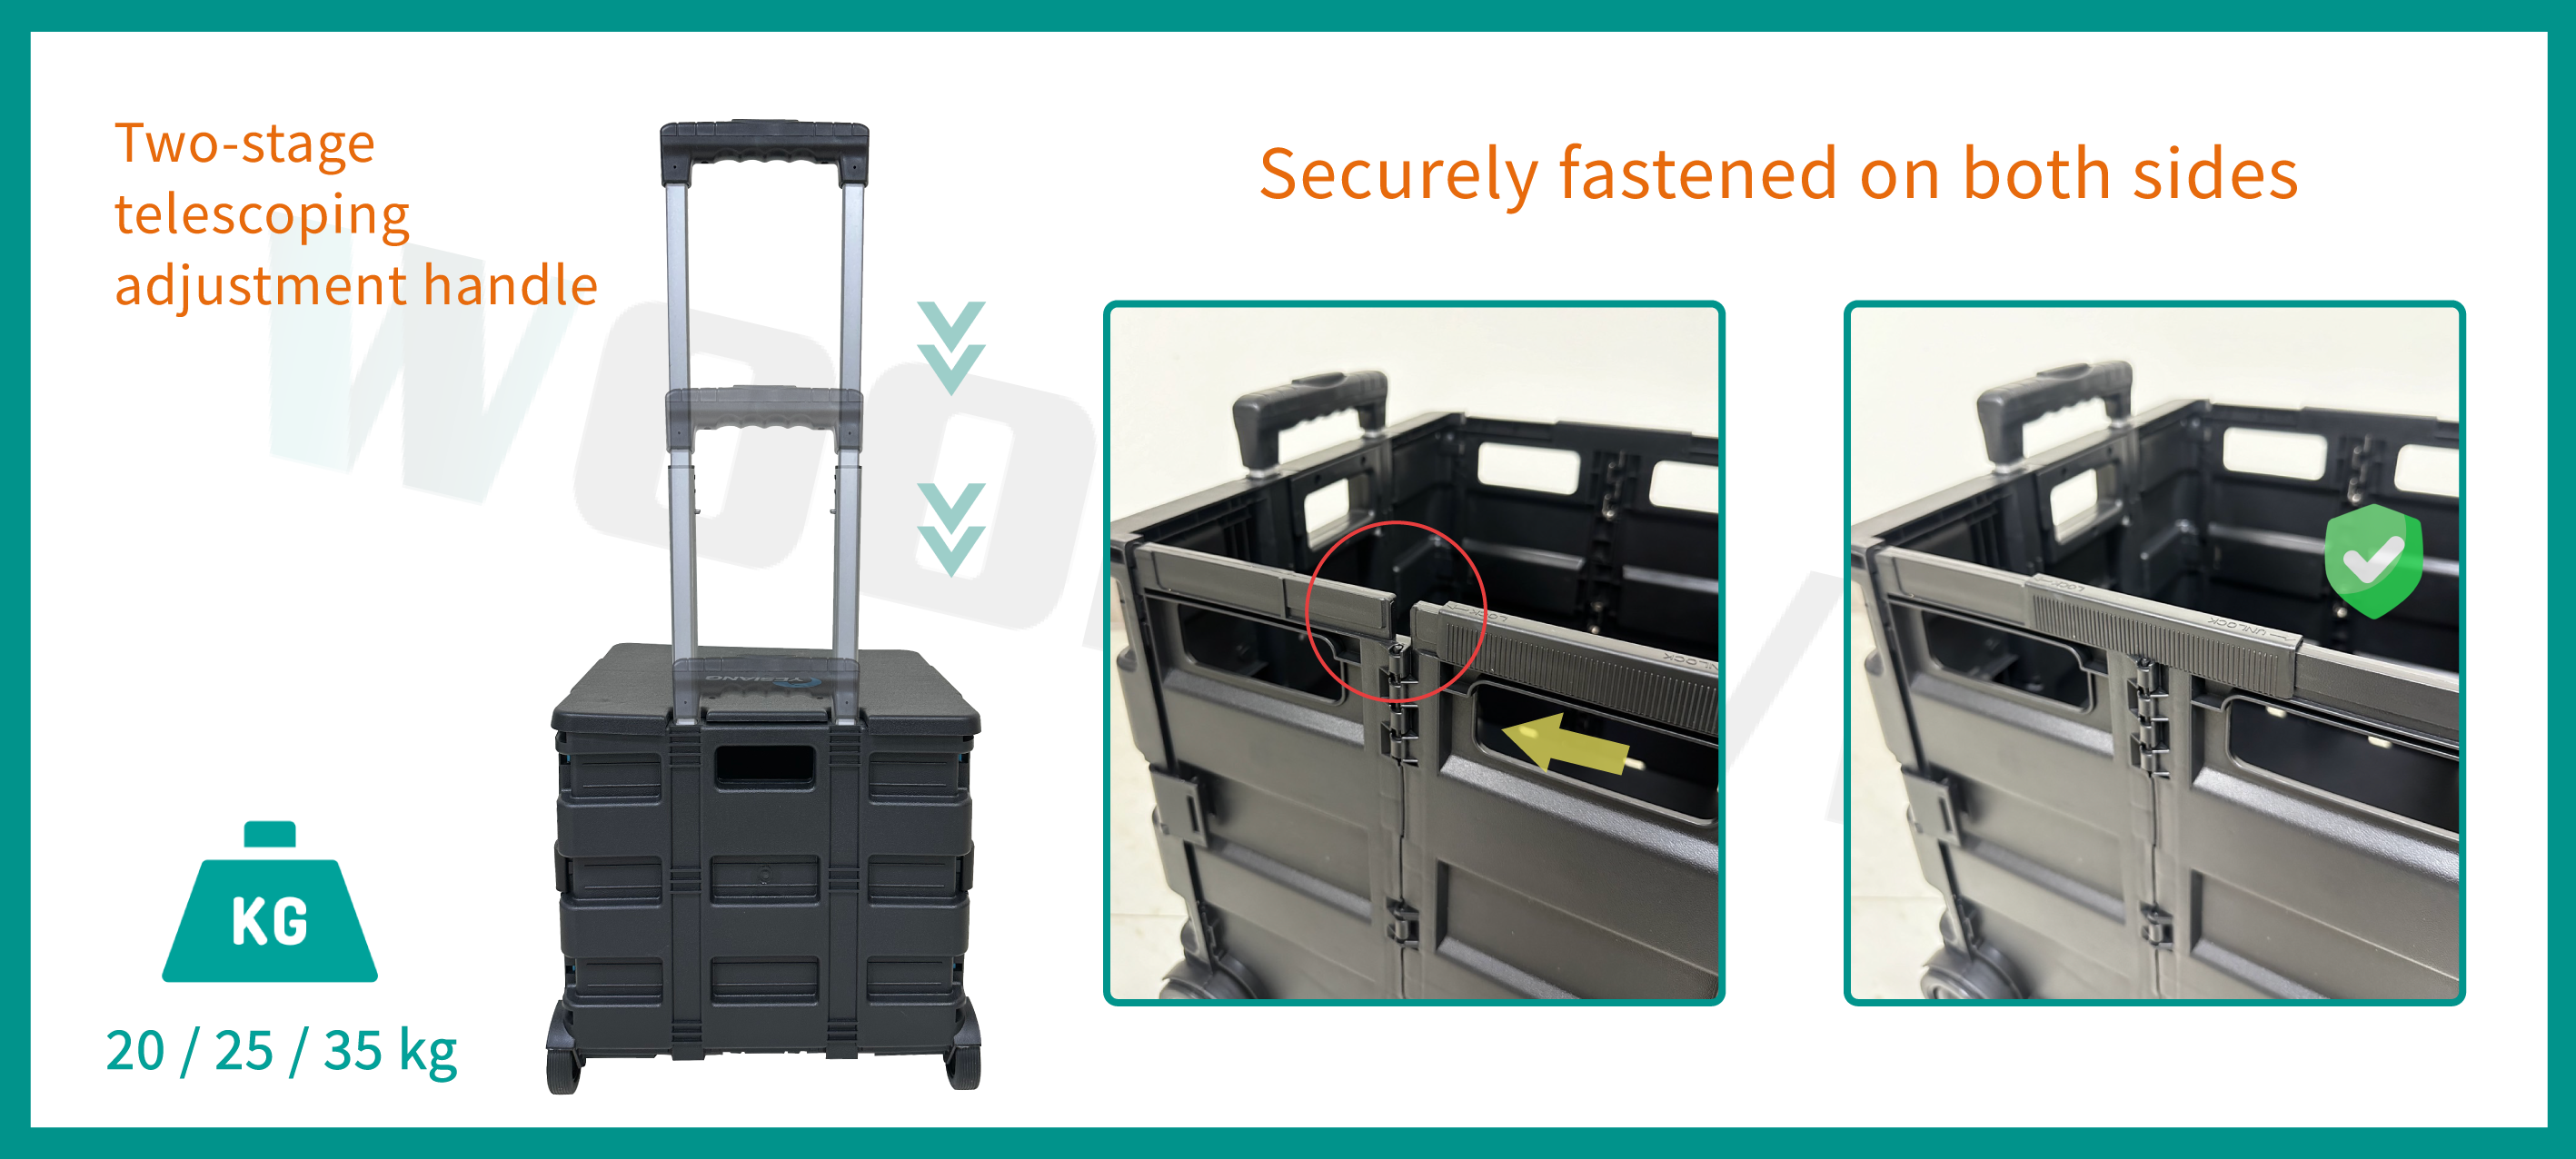 収納ボックスカートには、ユーザーの身長に合わせて調整できる2段階ハンドルデザインが特徴です。カートの両側には安全バックルデザインがあり、頑丈で耐久性があり、アイテムが落ちるのを防ぎます。